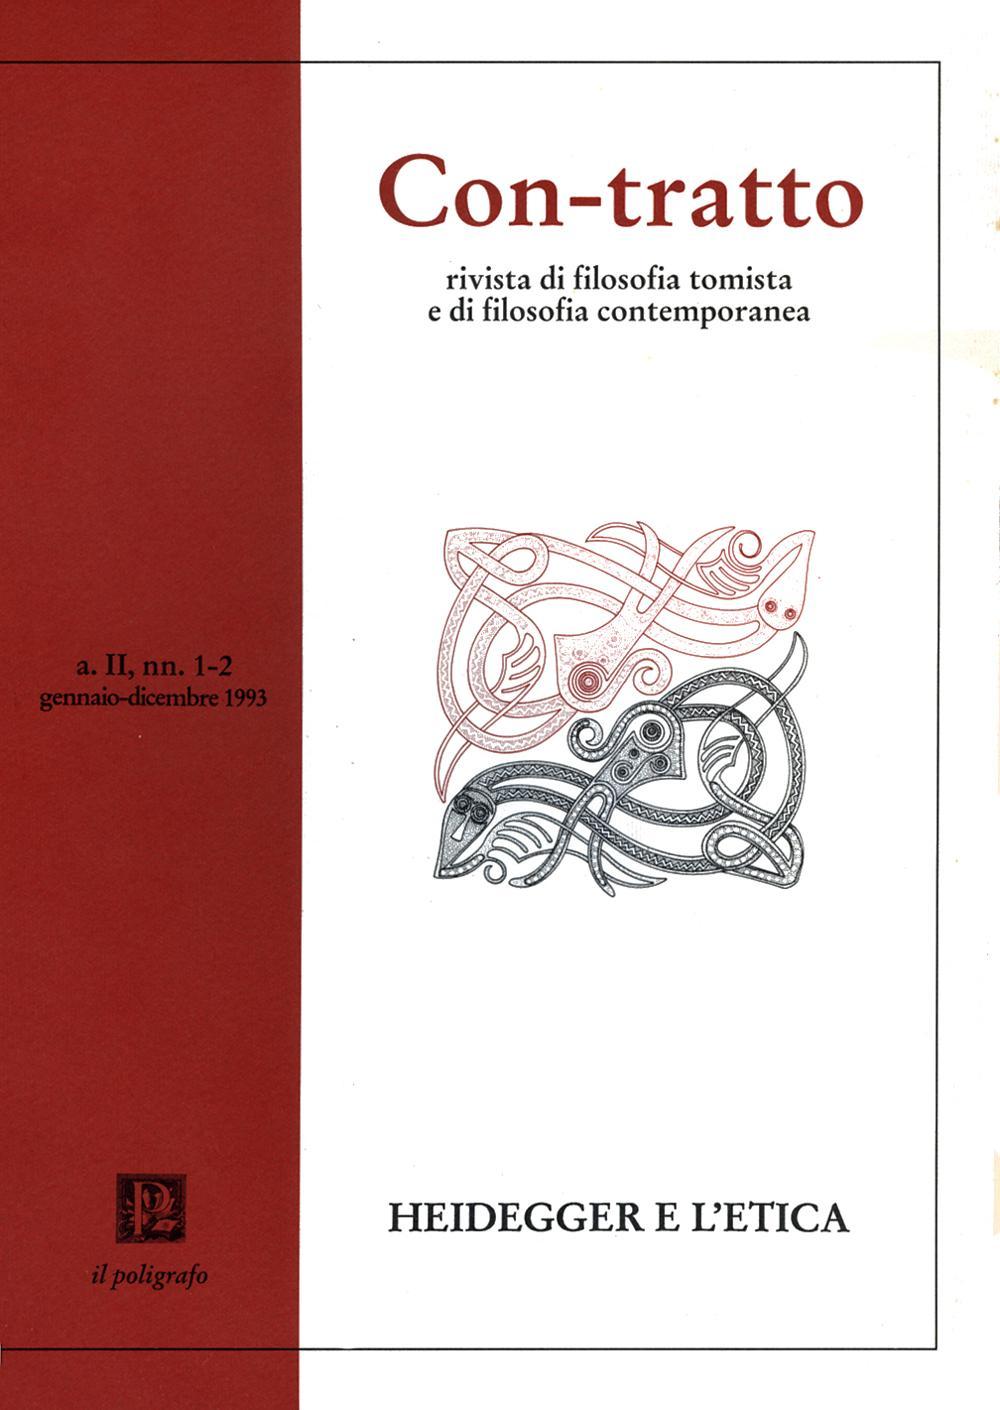 Con-tratto. Rivista di filosofia tomista e di filosofia contemporanea vol. 1-2 (1993)